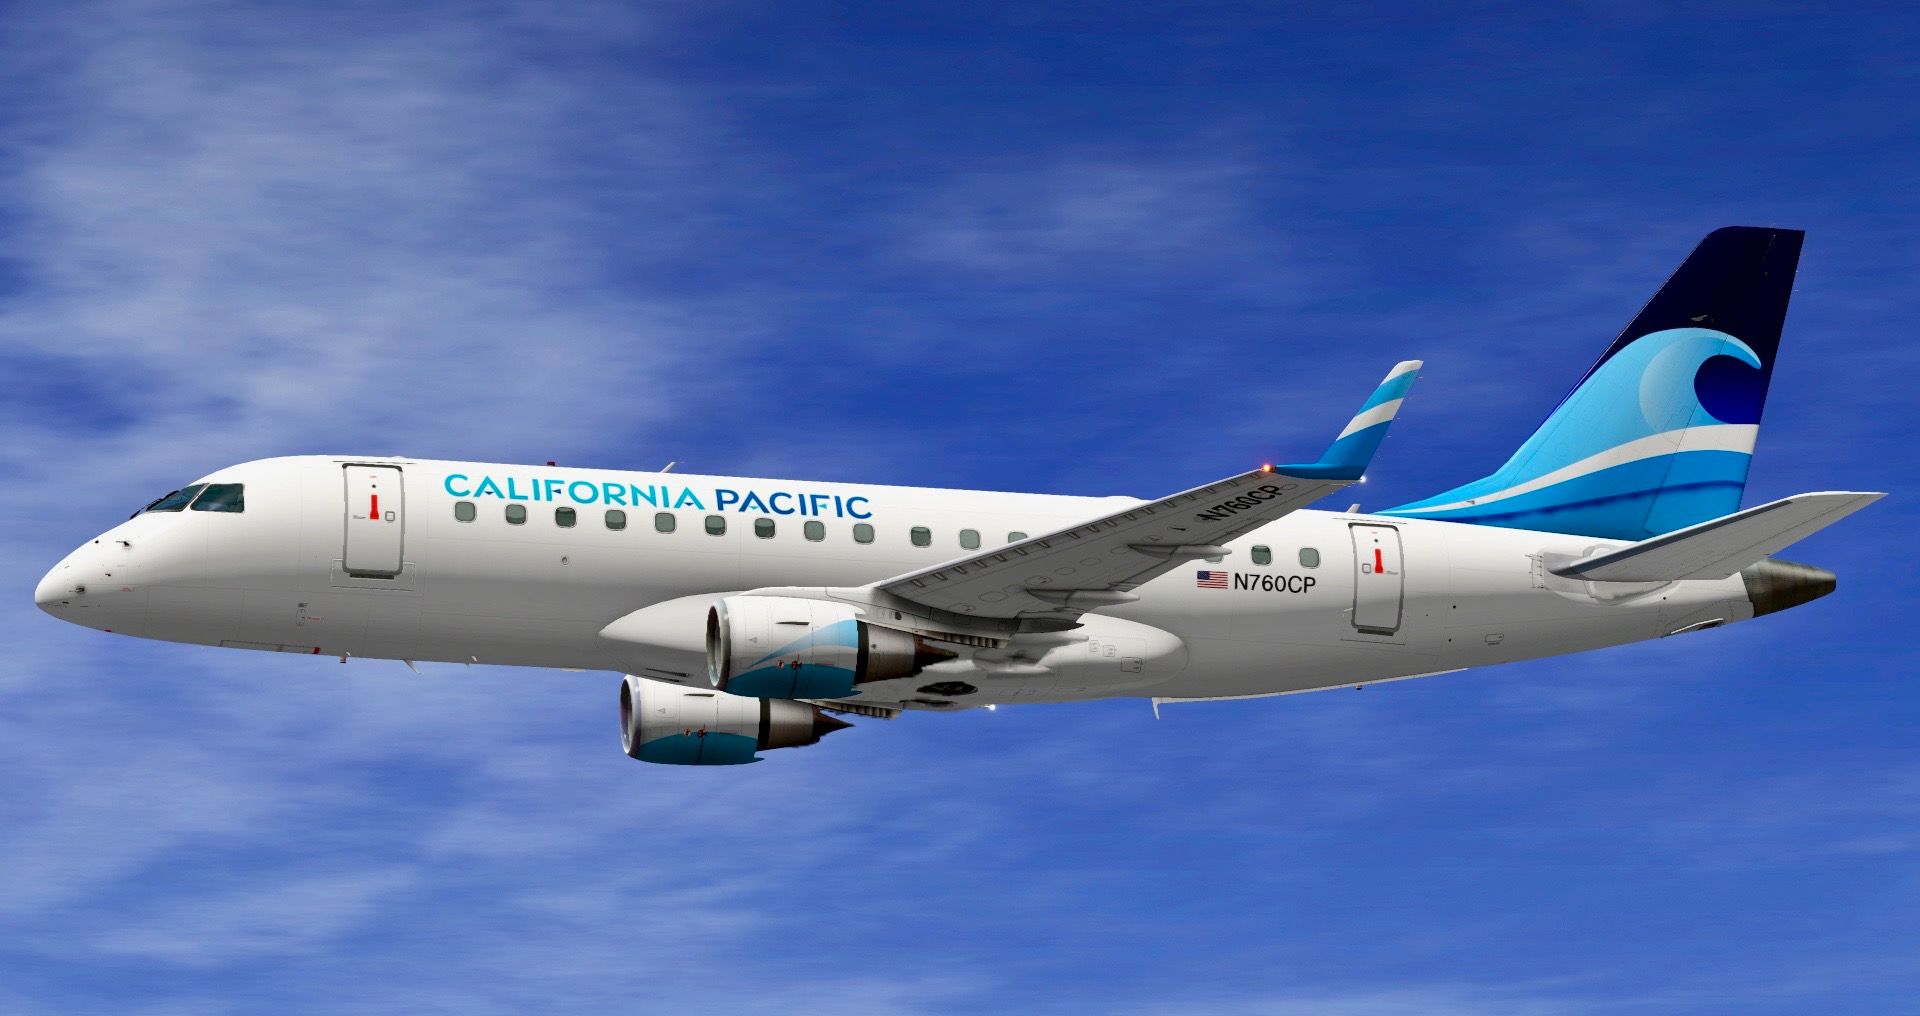 Nova companhia aerea California Pacific anuncia estreia enquanto outra suspende